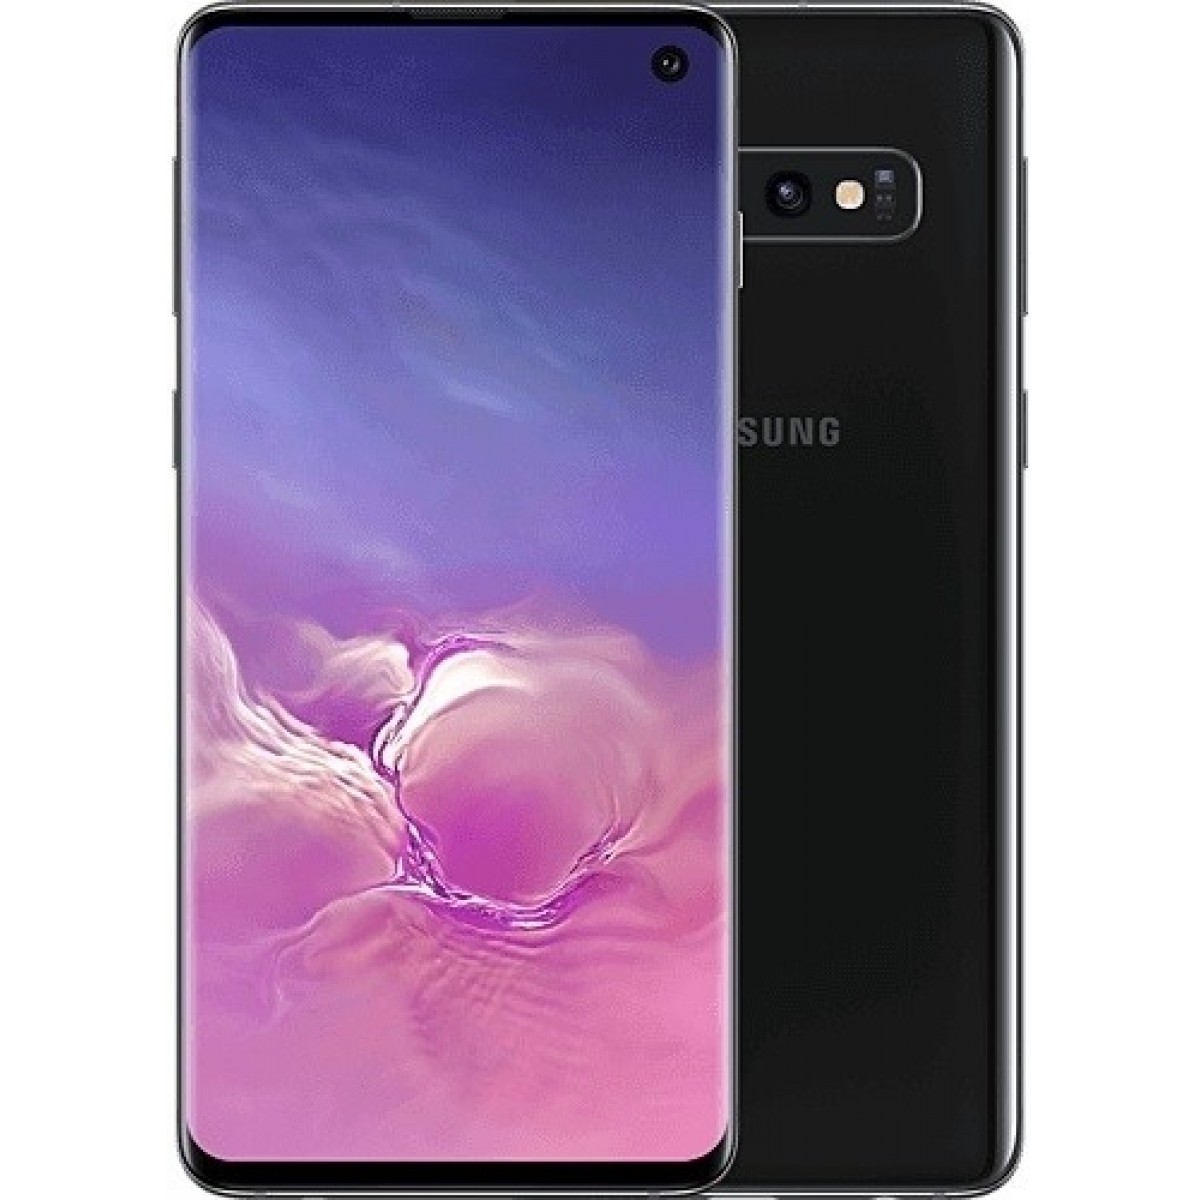 Samsung Galaxy S10 128GB - $699.99